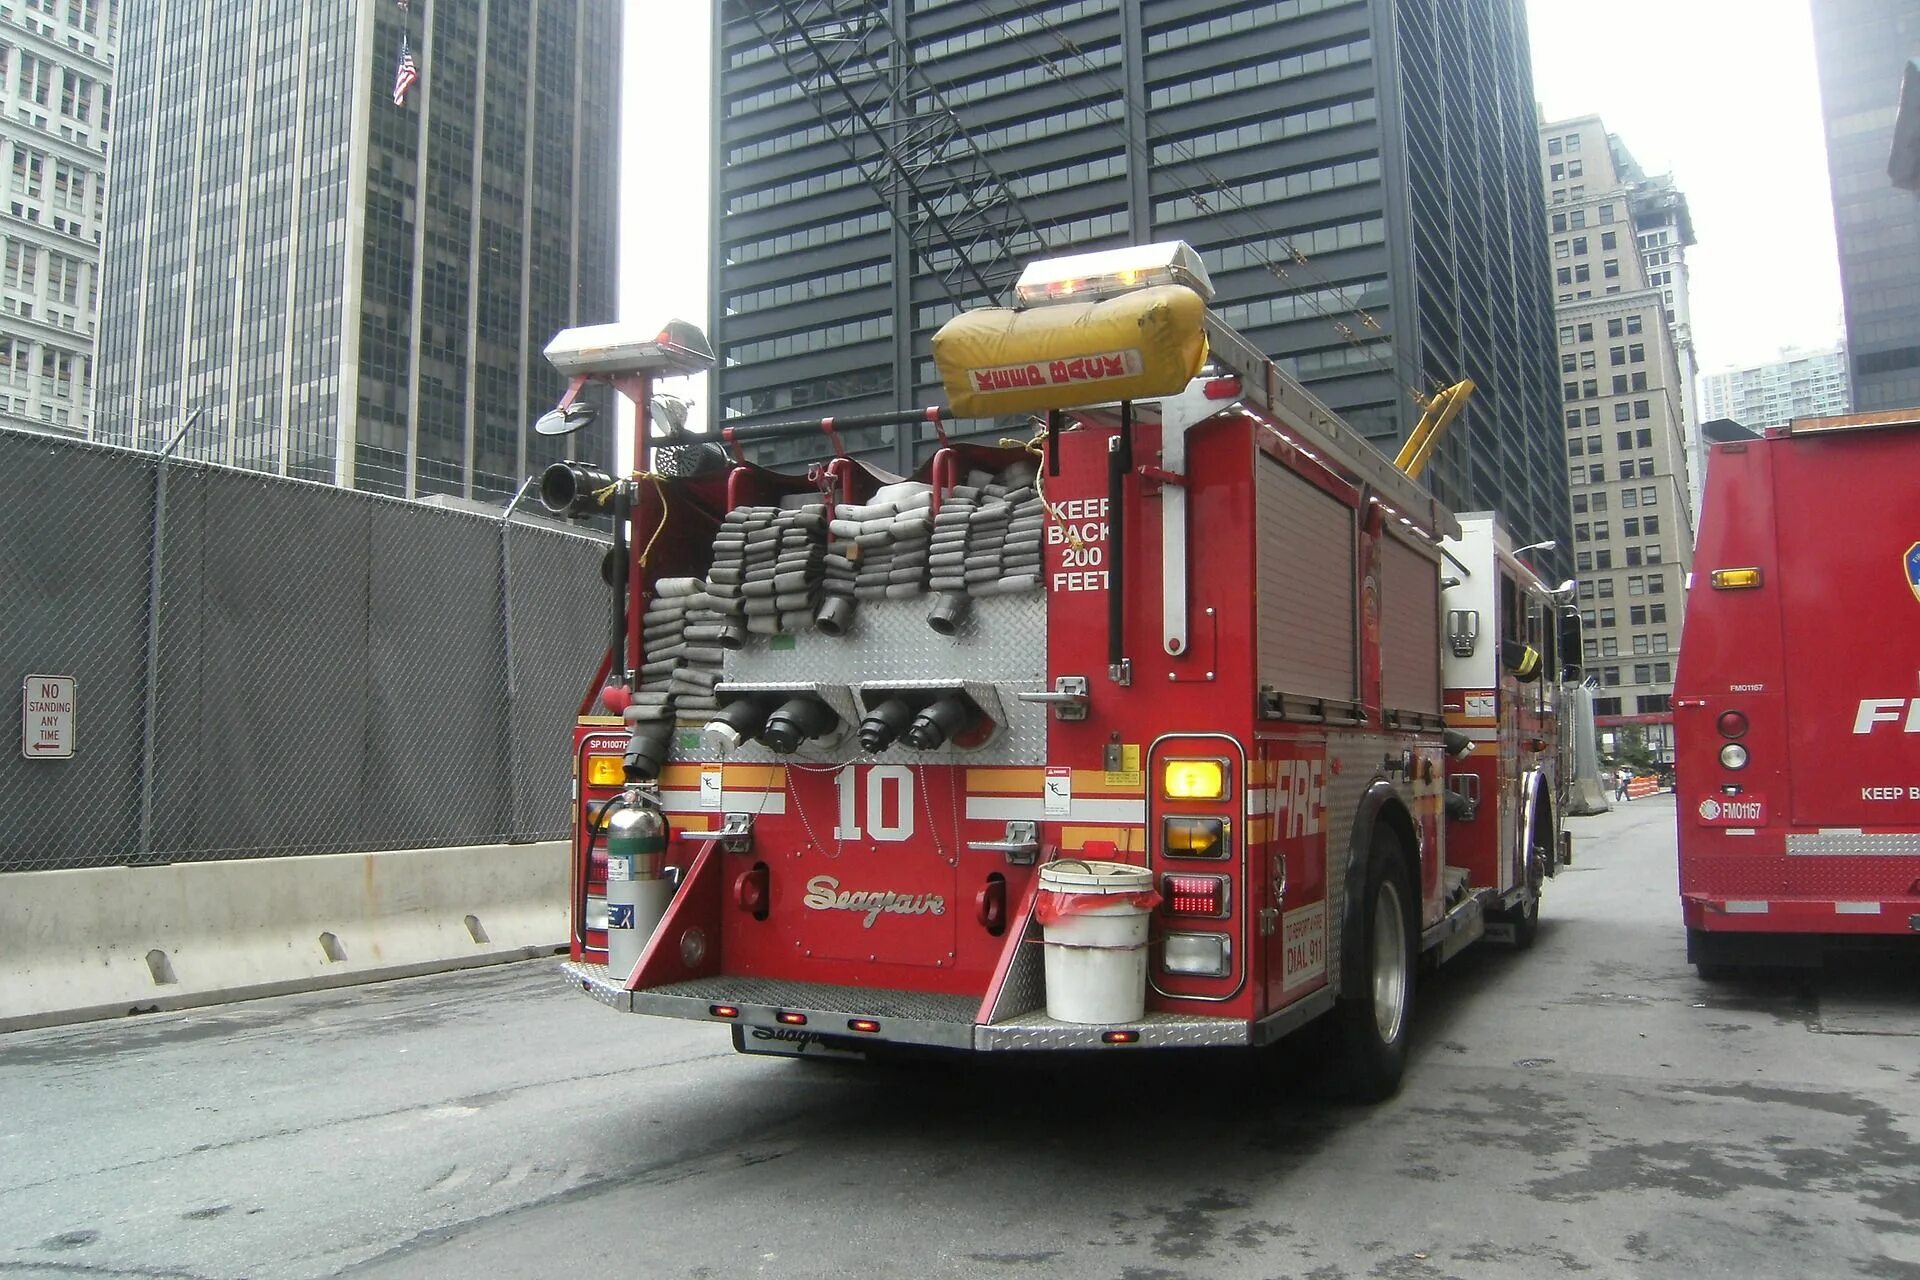 Машина "Fire Truck" пожарная, 49450. Пожарная часть Нью-Йорка. Пожарная машина Нью-Йорка. Нью йоркские пожарные машины.